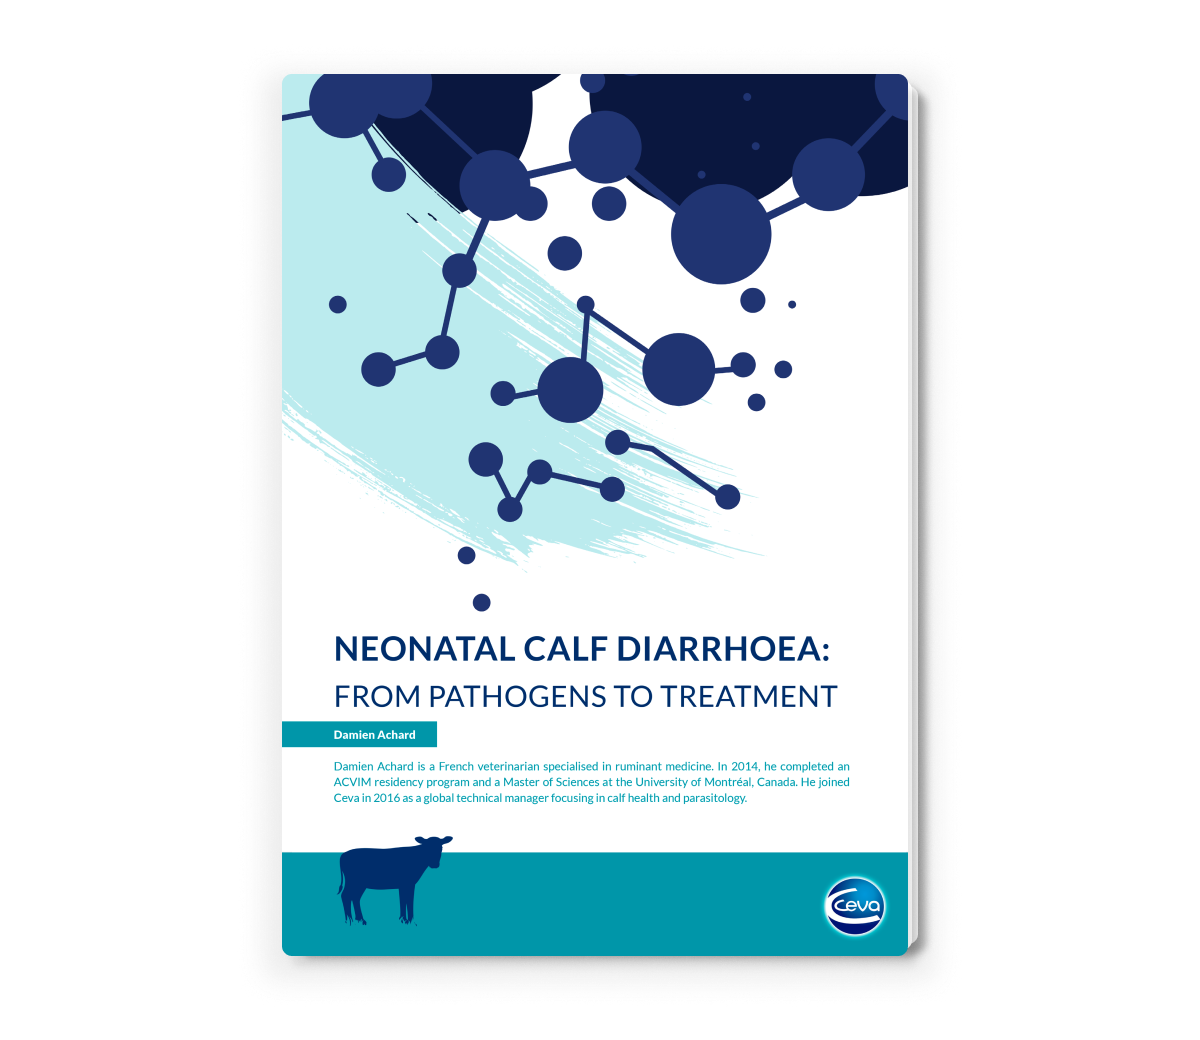 CEV_GL - Neonatal calf diarrhoea - Octubre - Portada 3D-1